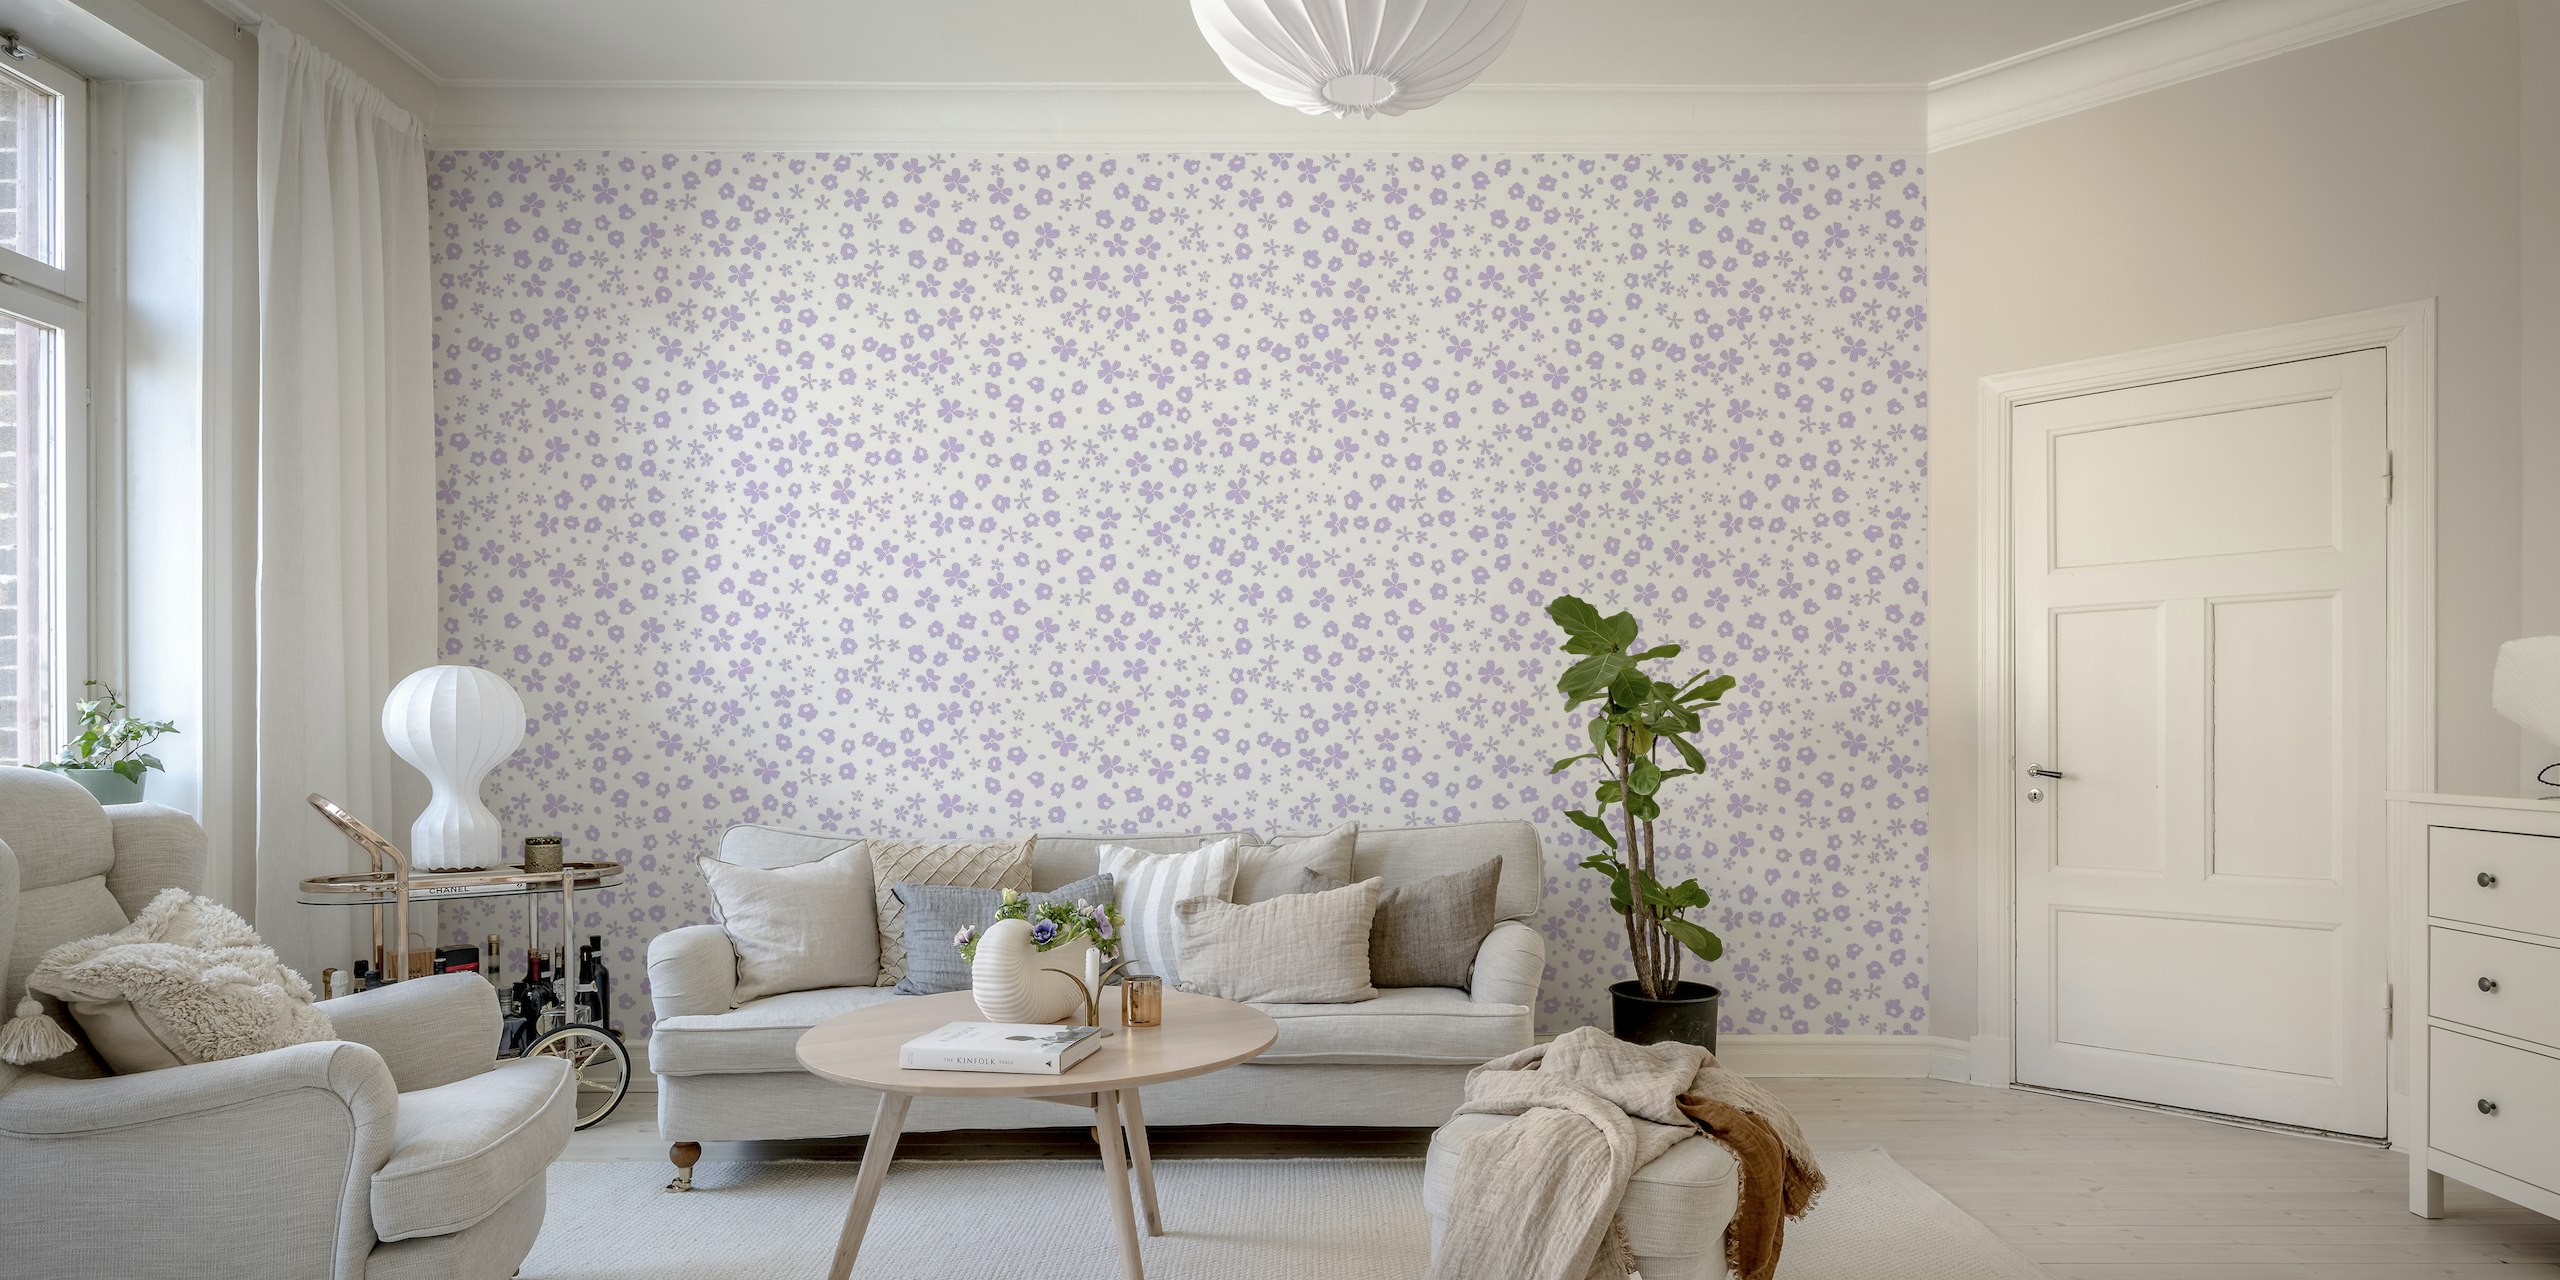 Flowers lavender colors A wallpaper